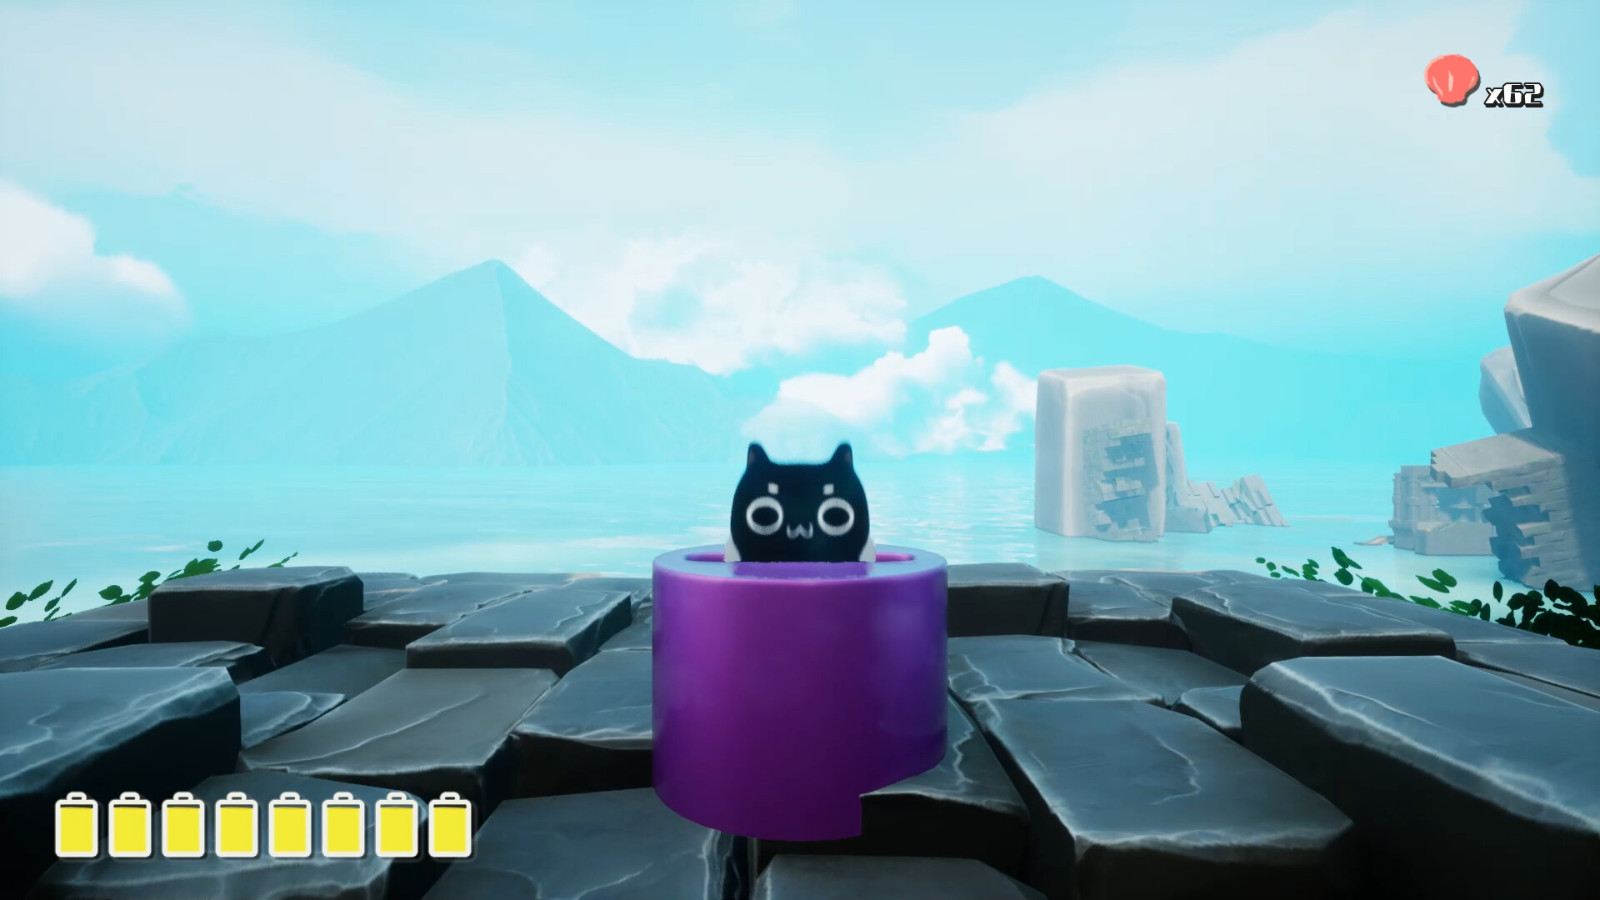 3D箱庭冒险解谜游戏 《喵之旅人》Steam页面上线